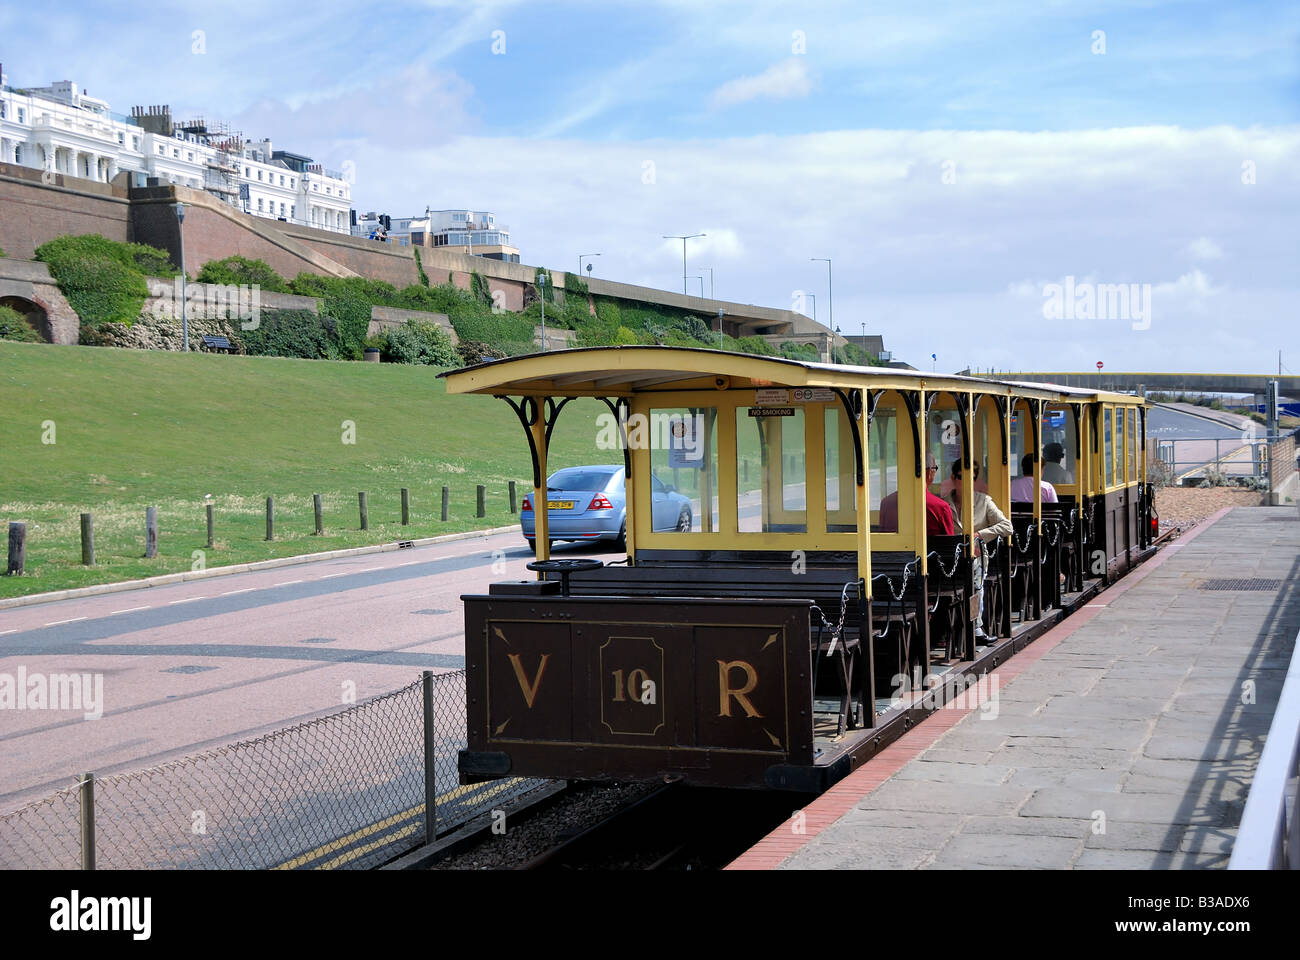 Volks elettrica ferroviaria treno, Brighton Foto Stock